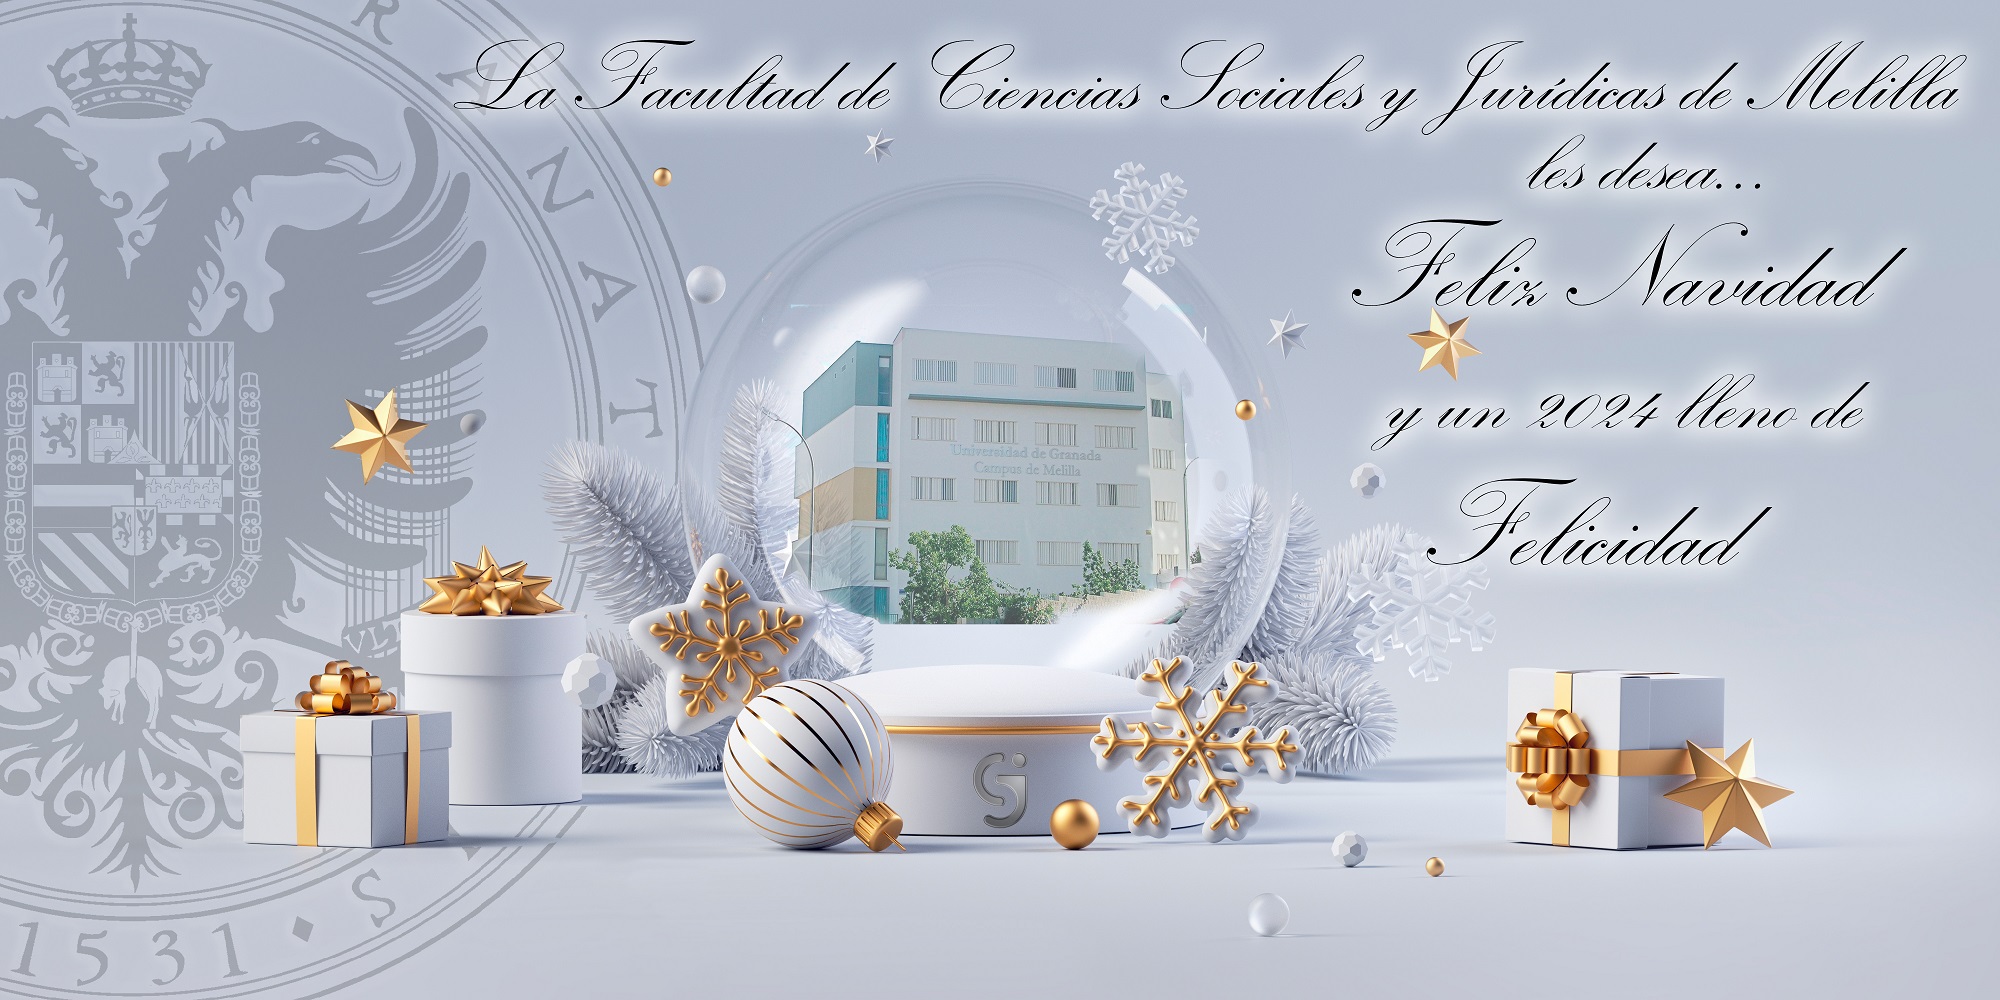 Imagen con regalos, bola, estrellas en color blanco y dorado sobre el sello de la UGR y una bola de nieve central con una foto del edificio de la Universidad del Campus de Melilla